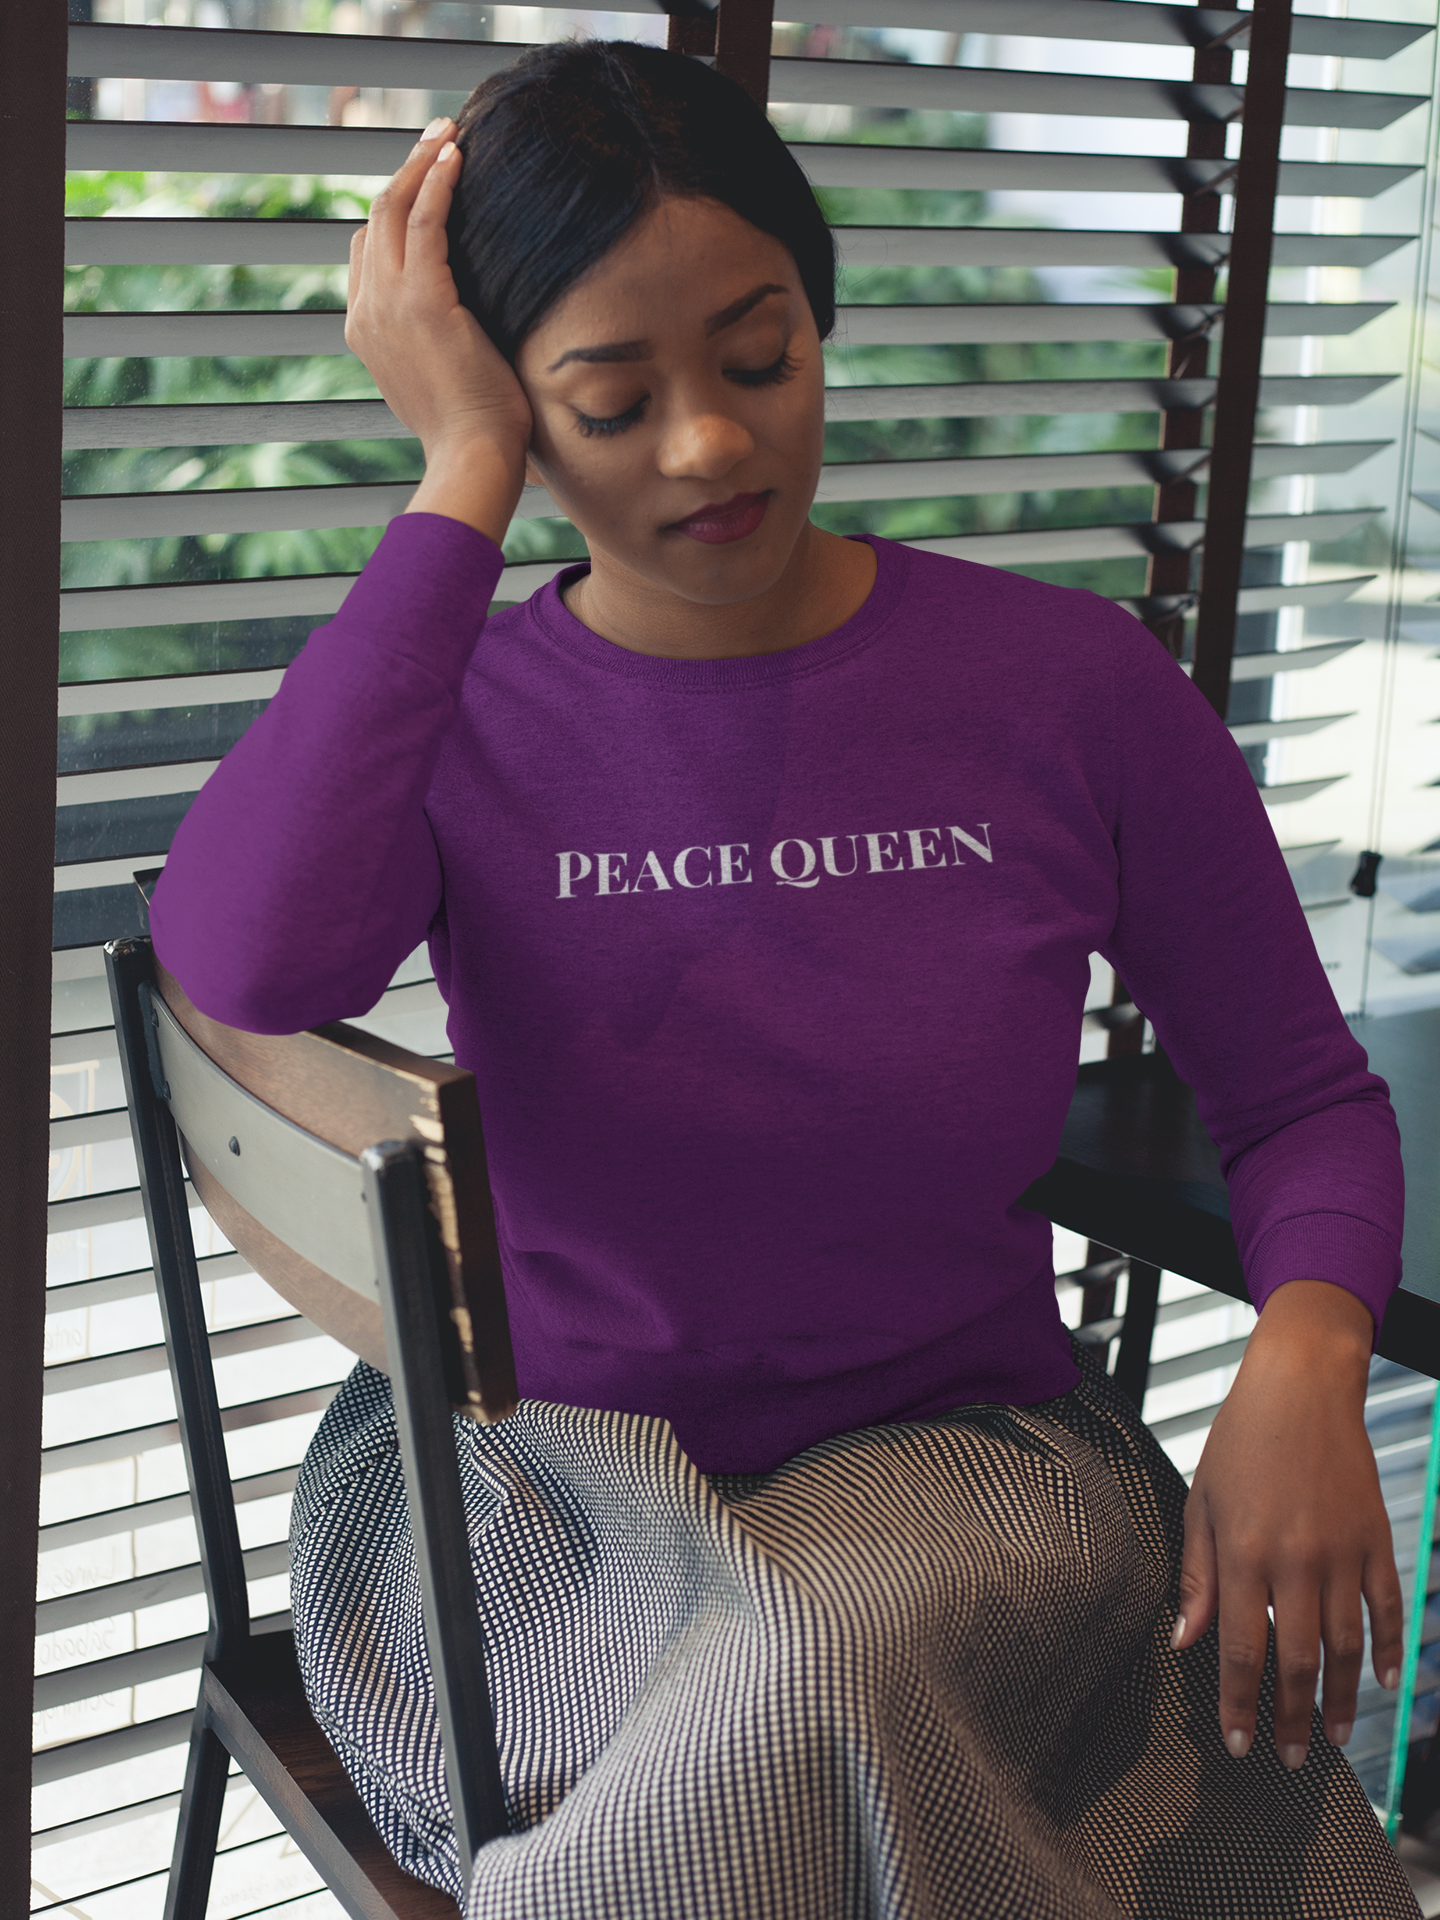 Peace Queen (Heavy Blend™ Crewneck Sweatshirt)